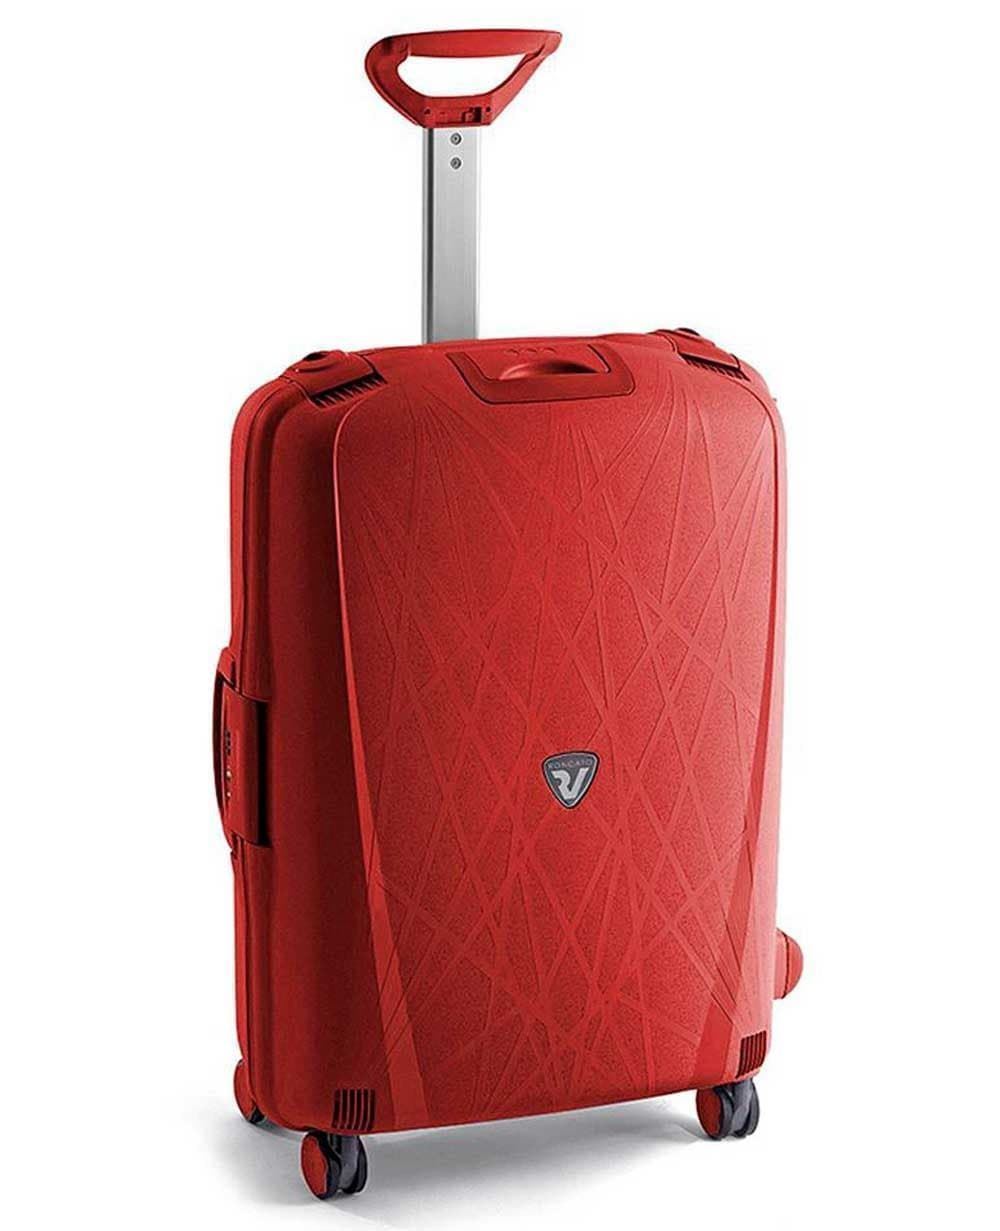 maleta mediana roncato light spinner 4 ruedas roja - Imagen 1